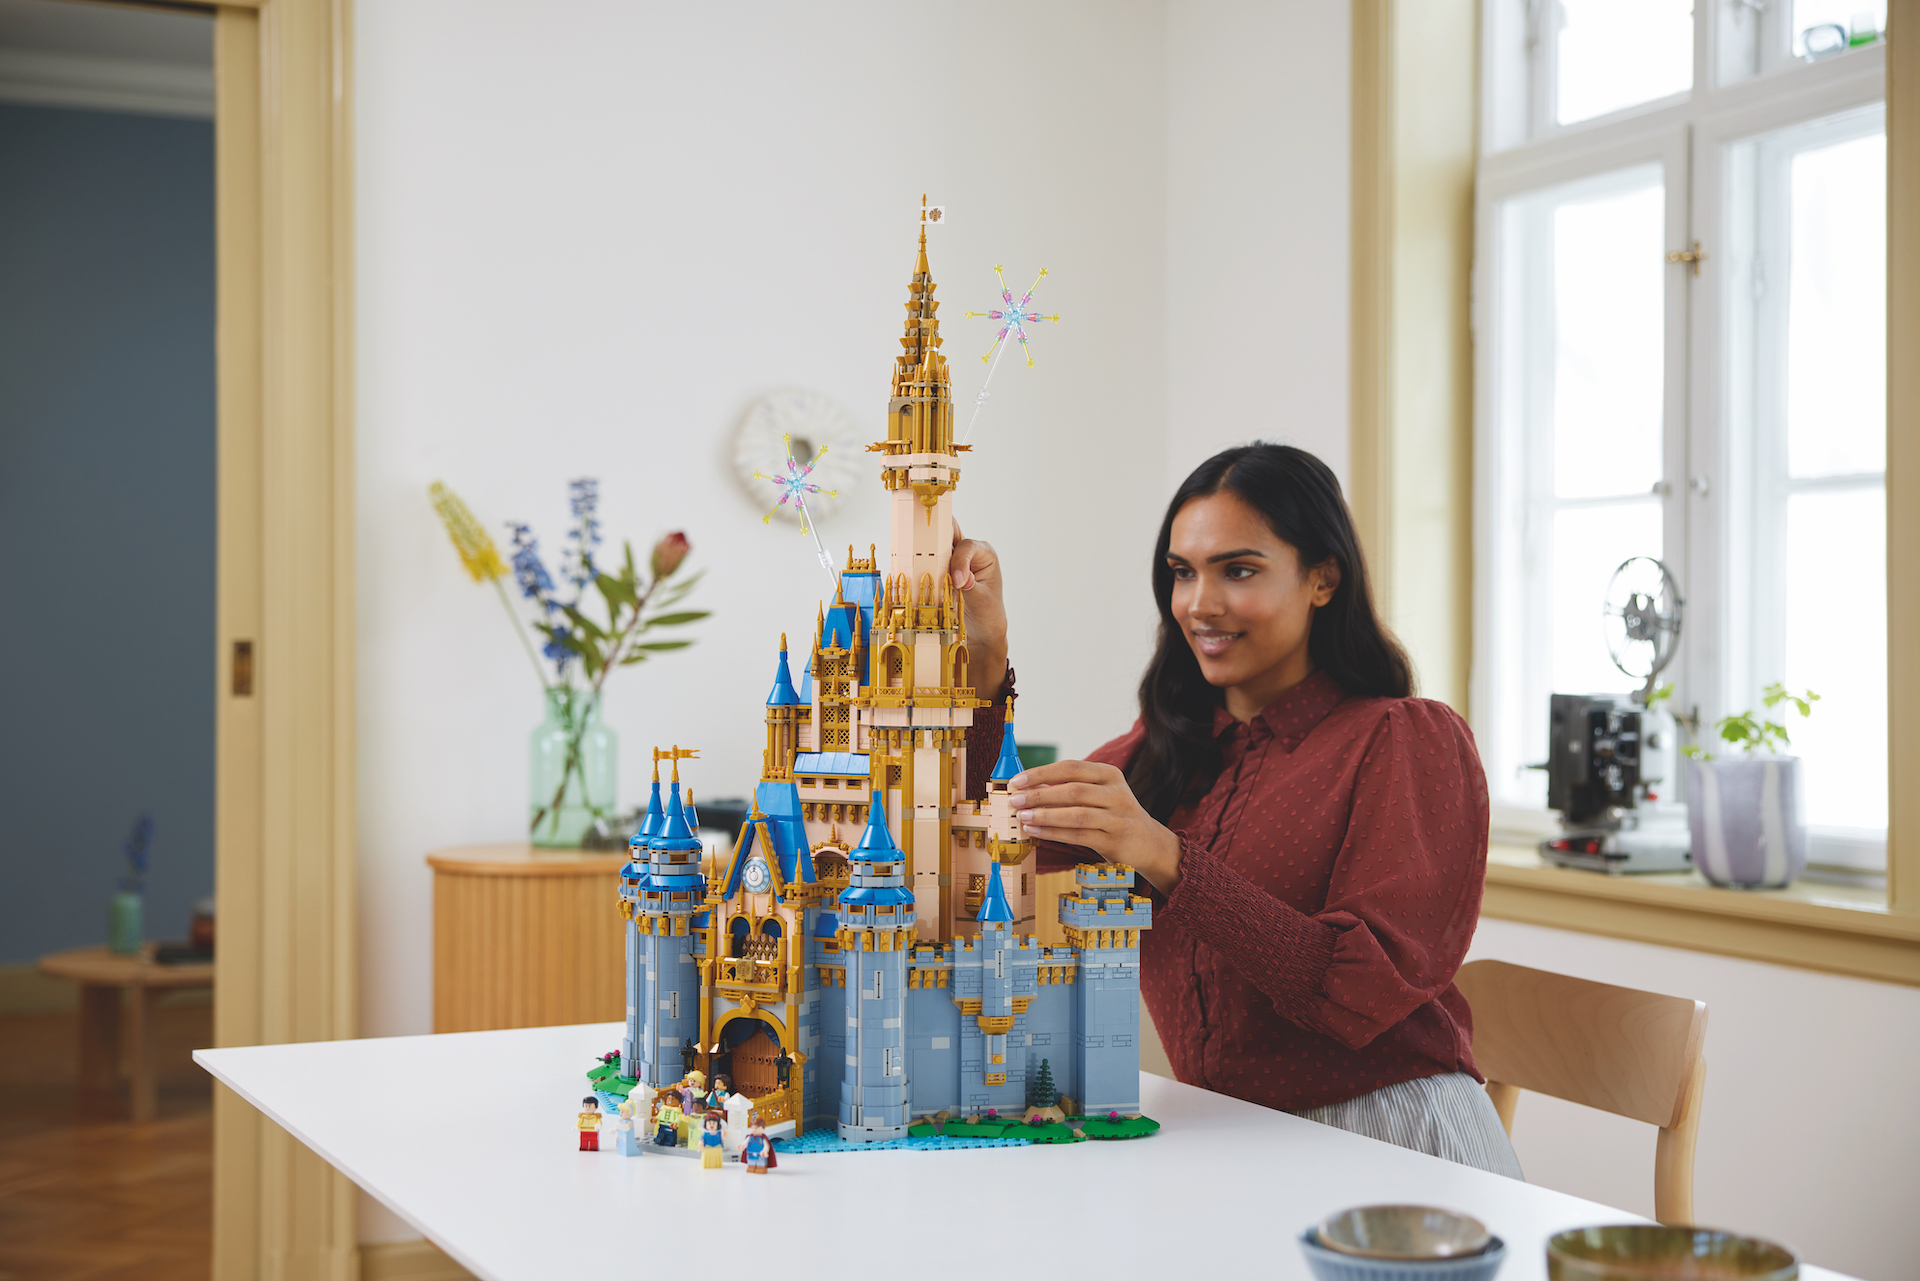 Célébrez Disney 100 en avance pour le double de points LEGO Insiders